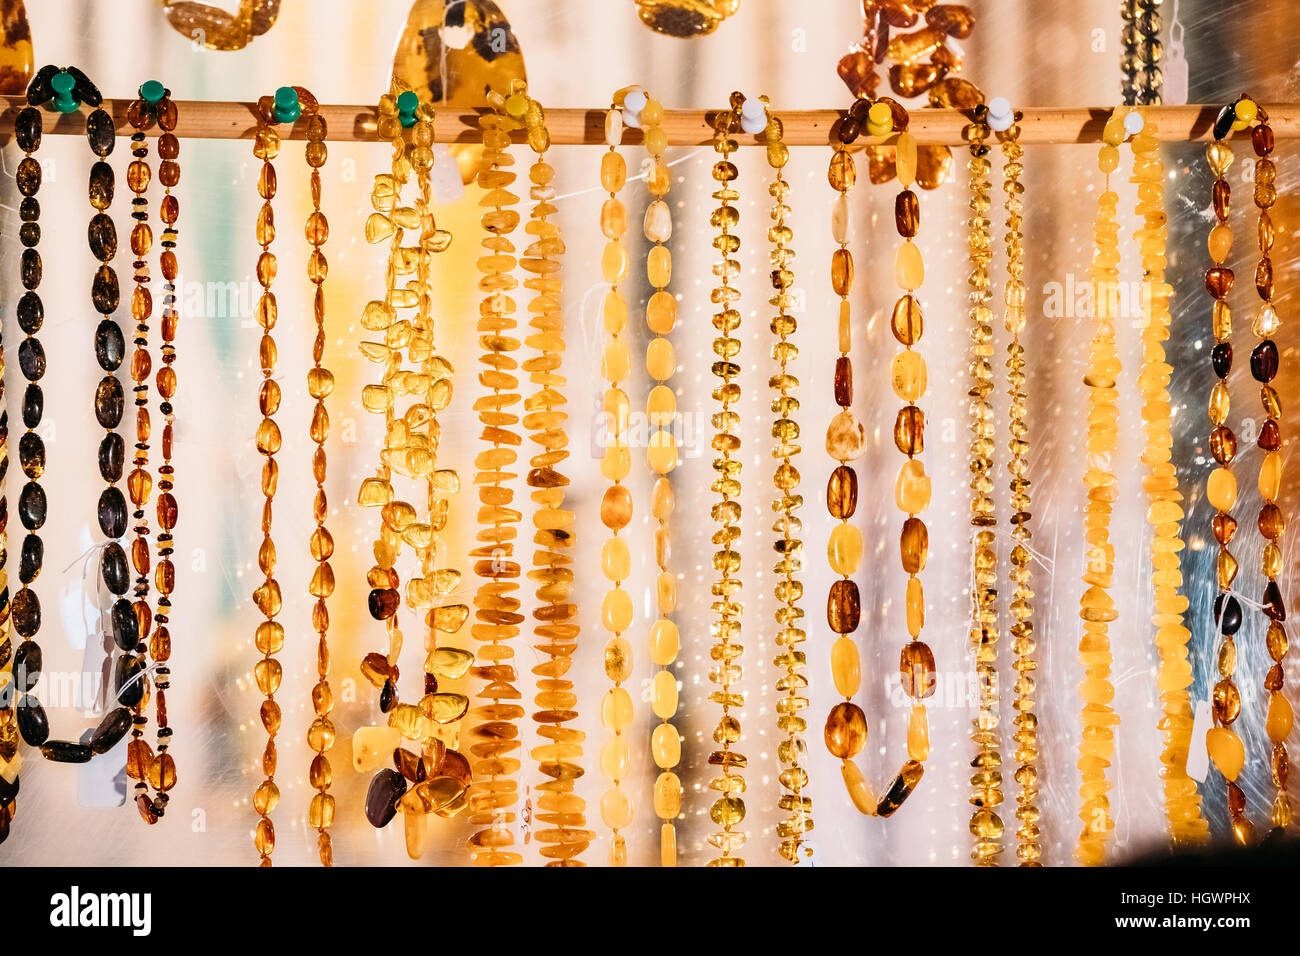 Varietà di talloni realizzati di ambra. Gioielli fatti di ambra. Tradizionale souvenir al Mercato Europeo. Souvenir da paesi baltici, Europa. Foto Stock